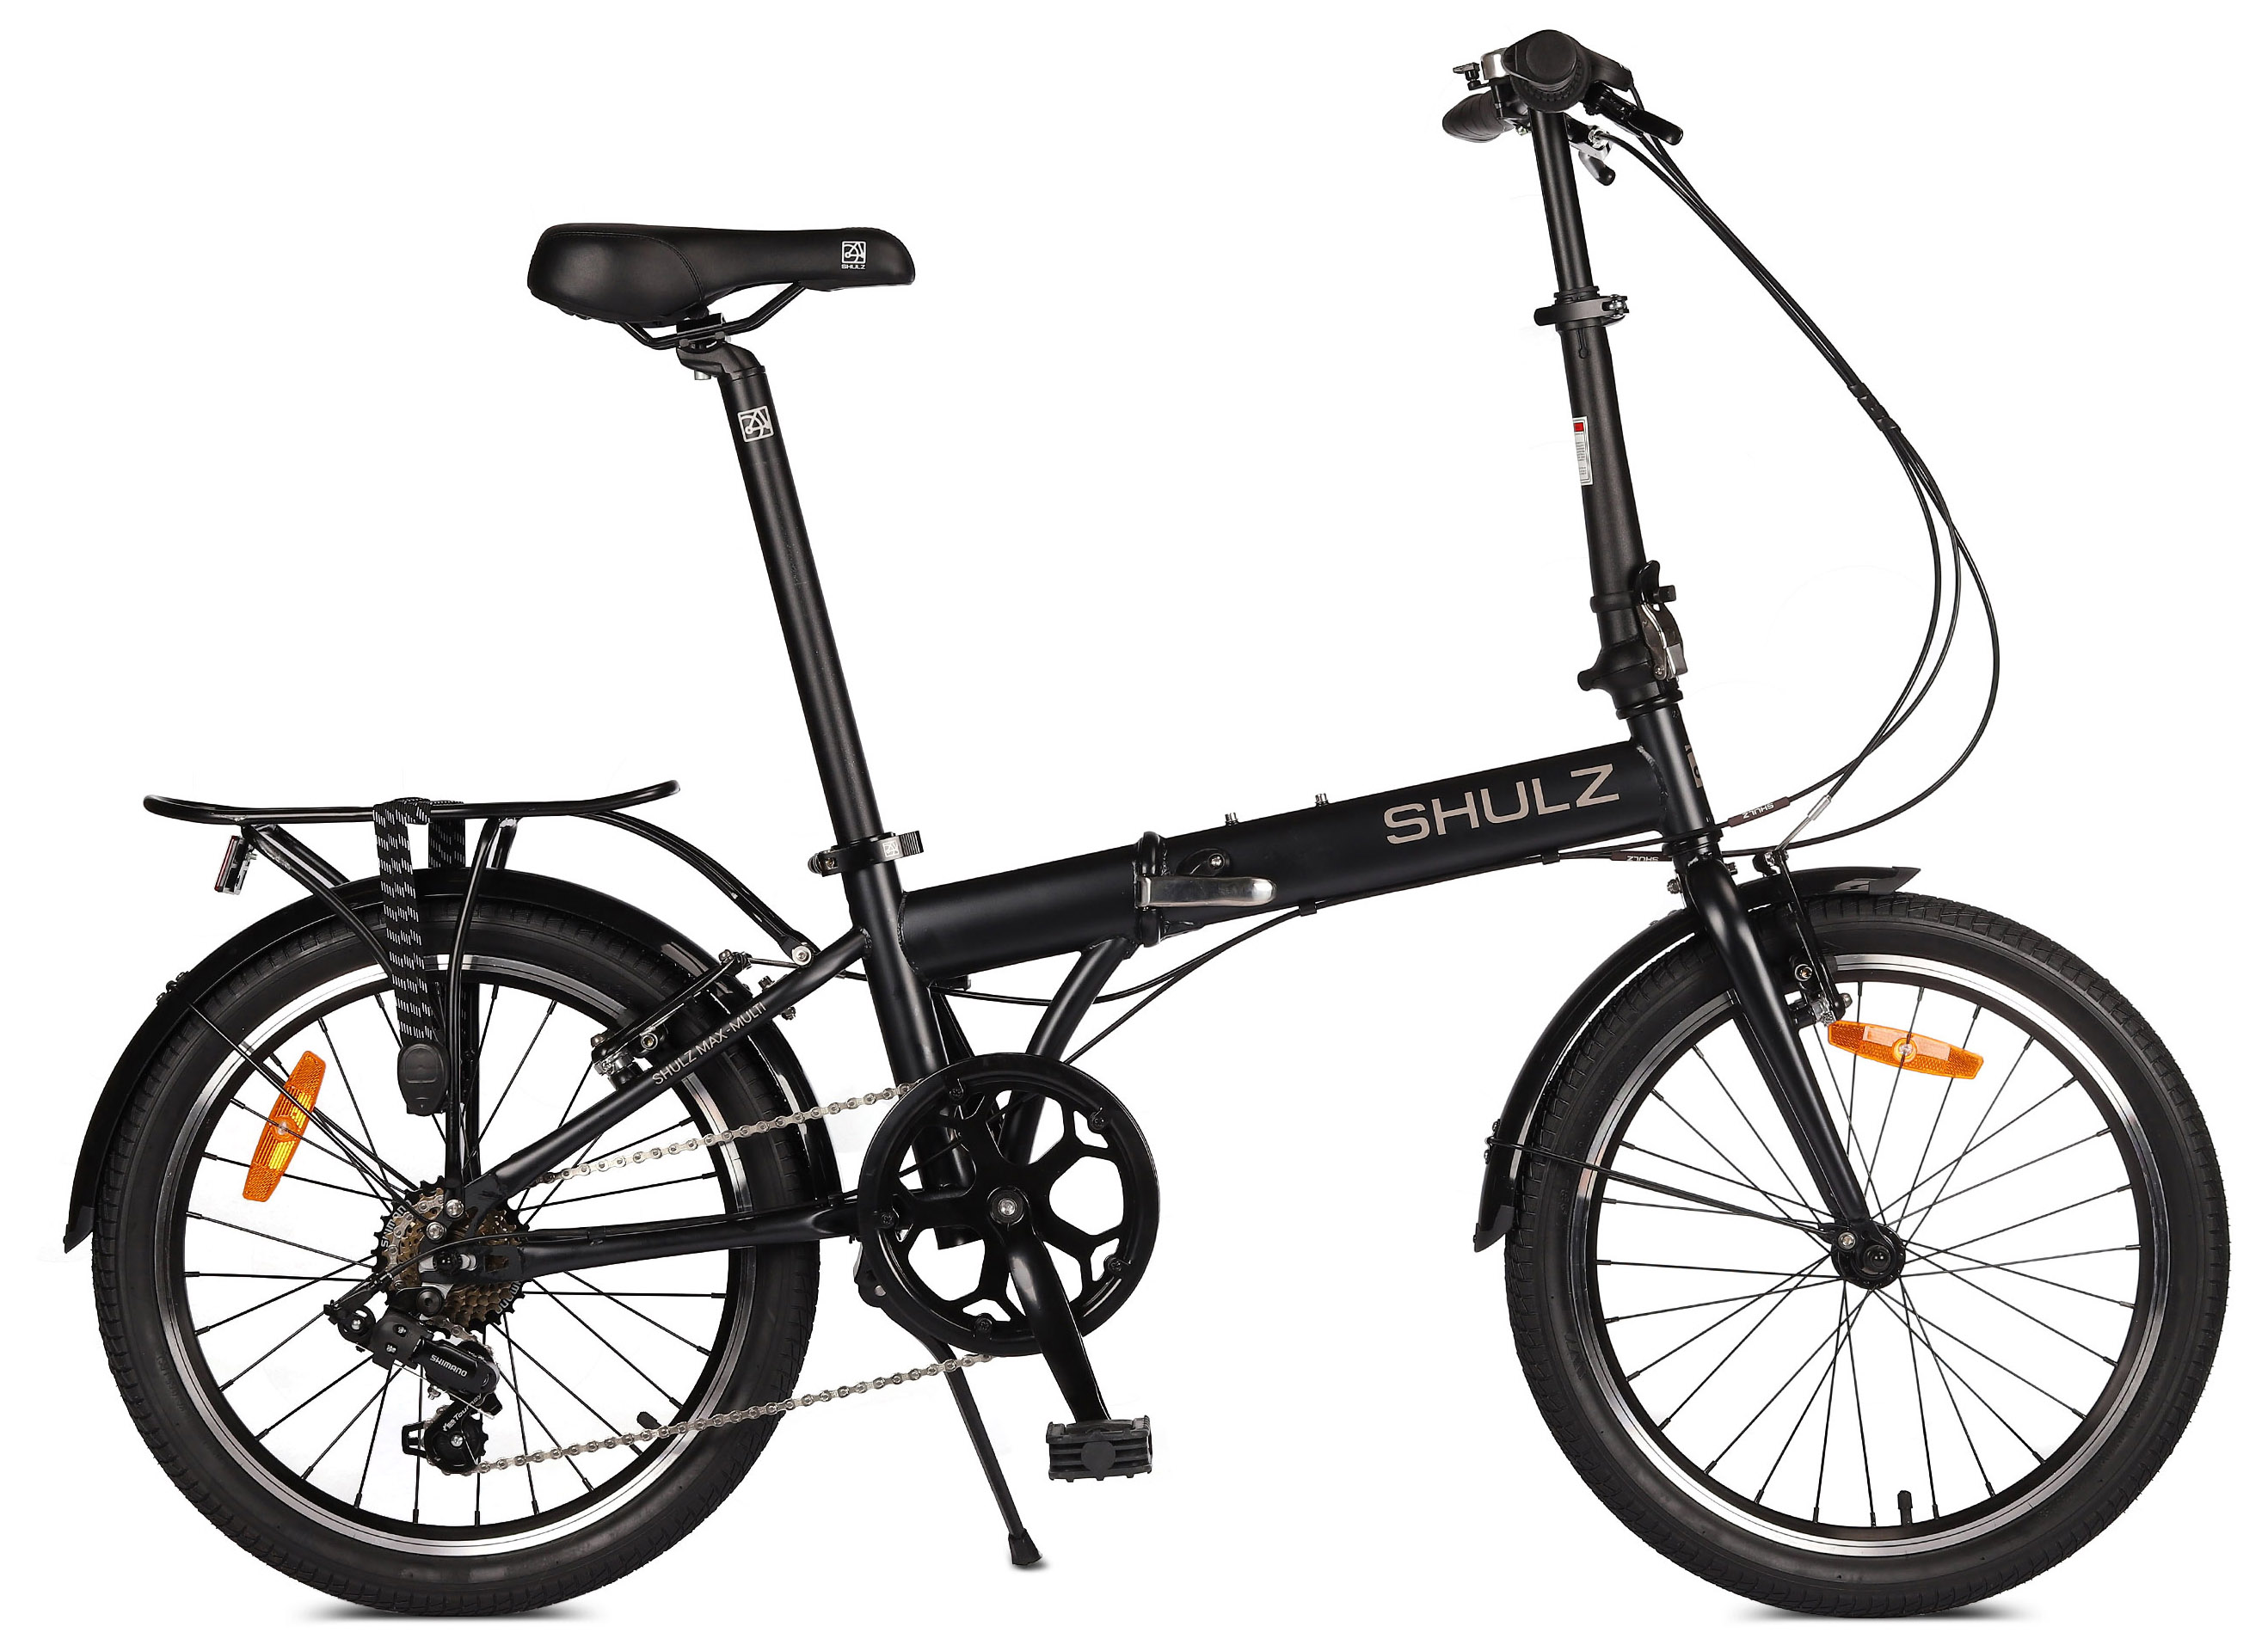  Отзывы о Складном велосипеде Shulz Max Multi 2020